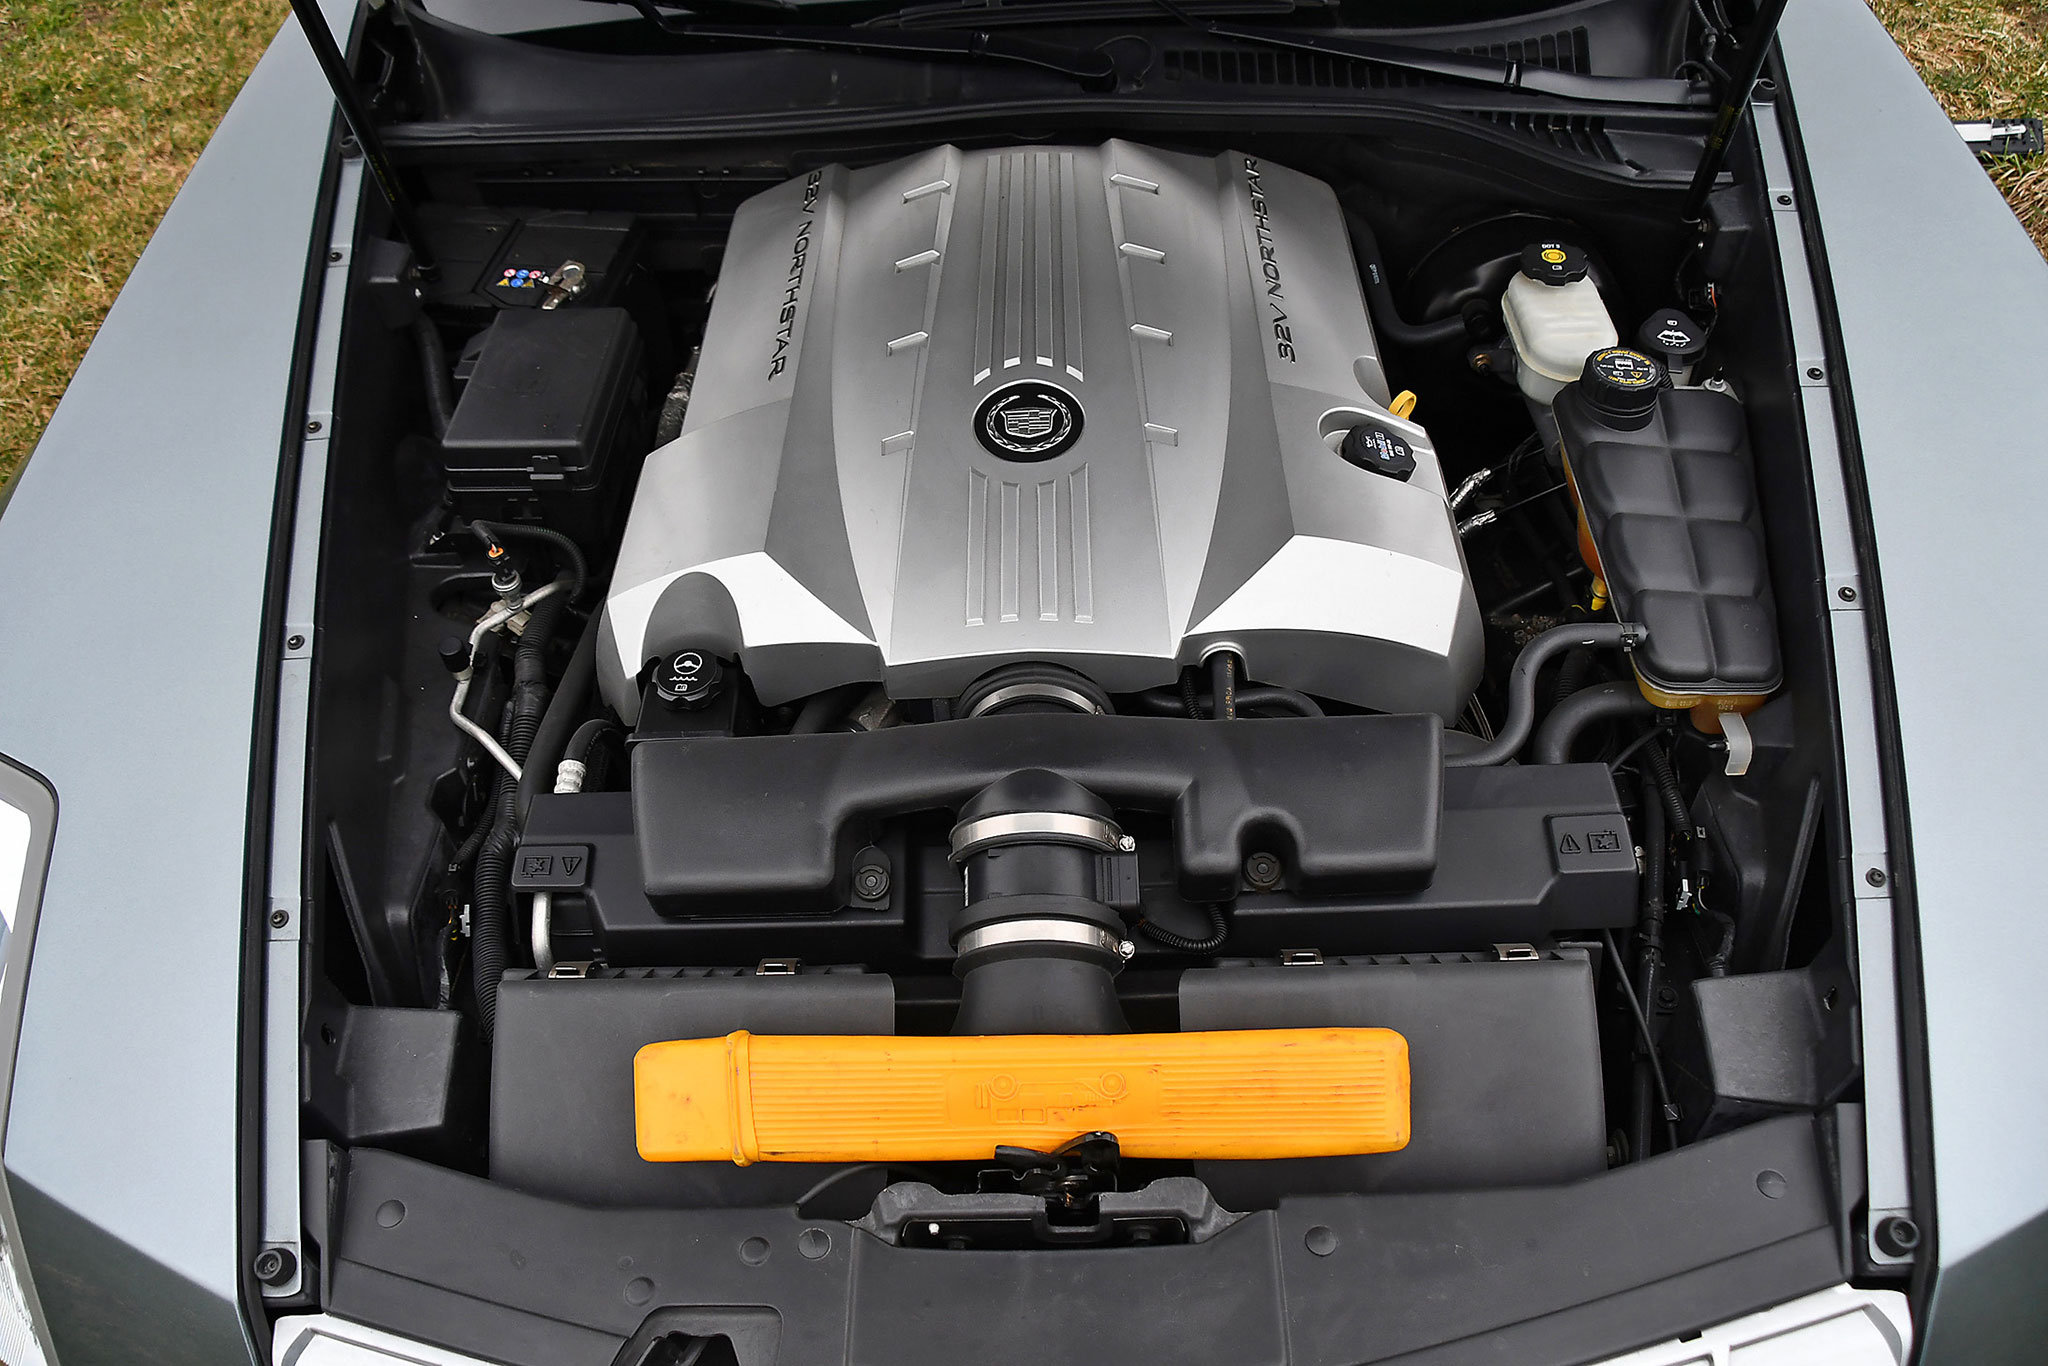 2004 Cadillac XLR 4.6 – moteur de 4656 cm³ et boîte automatique pour seulement 18 000 kilomètres.